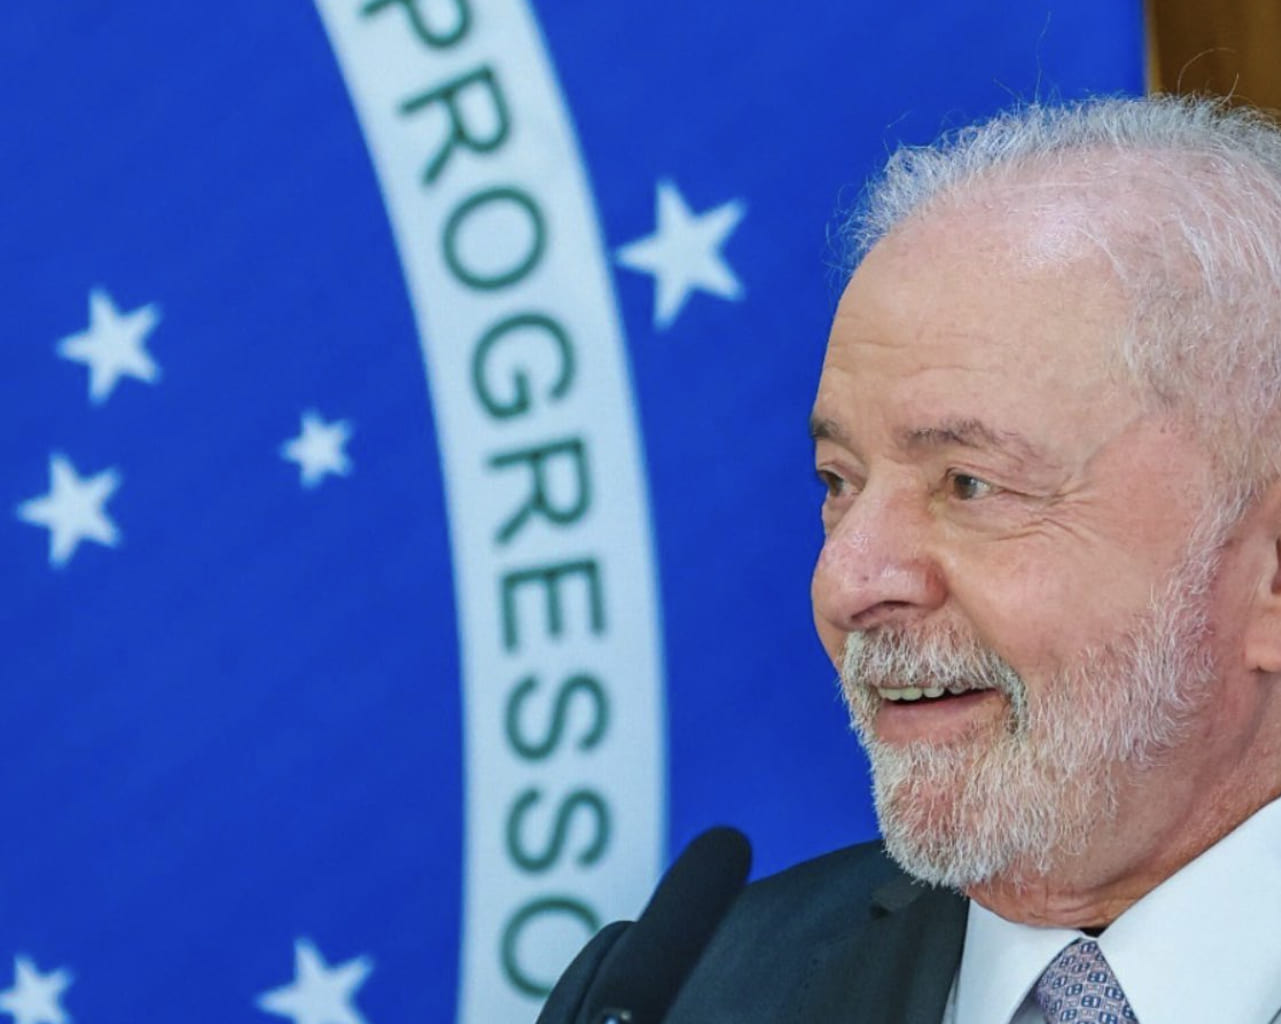 Governo Lula defende regulação de redes sociais em fórum global da ONU